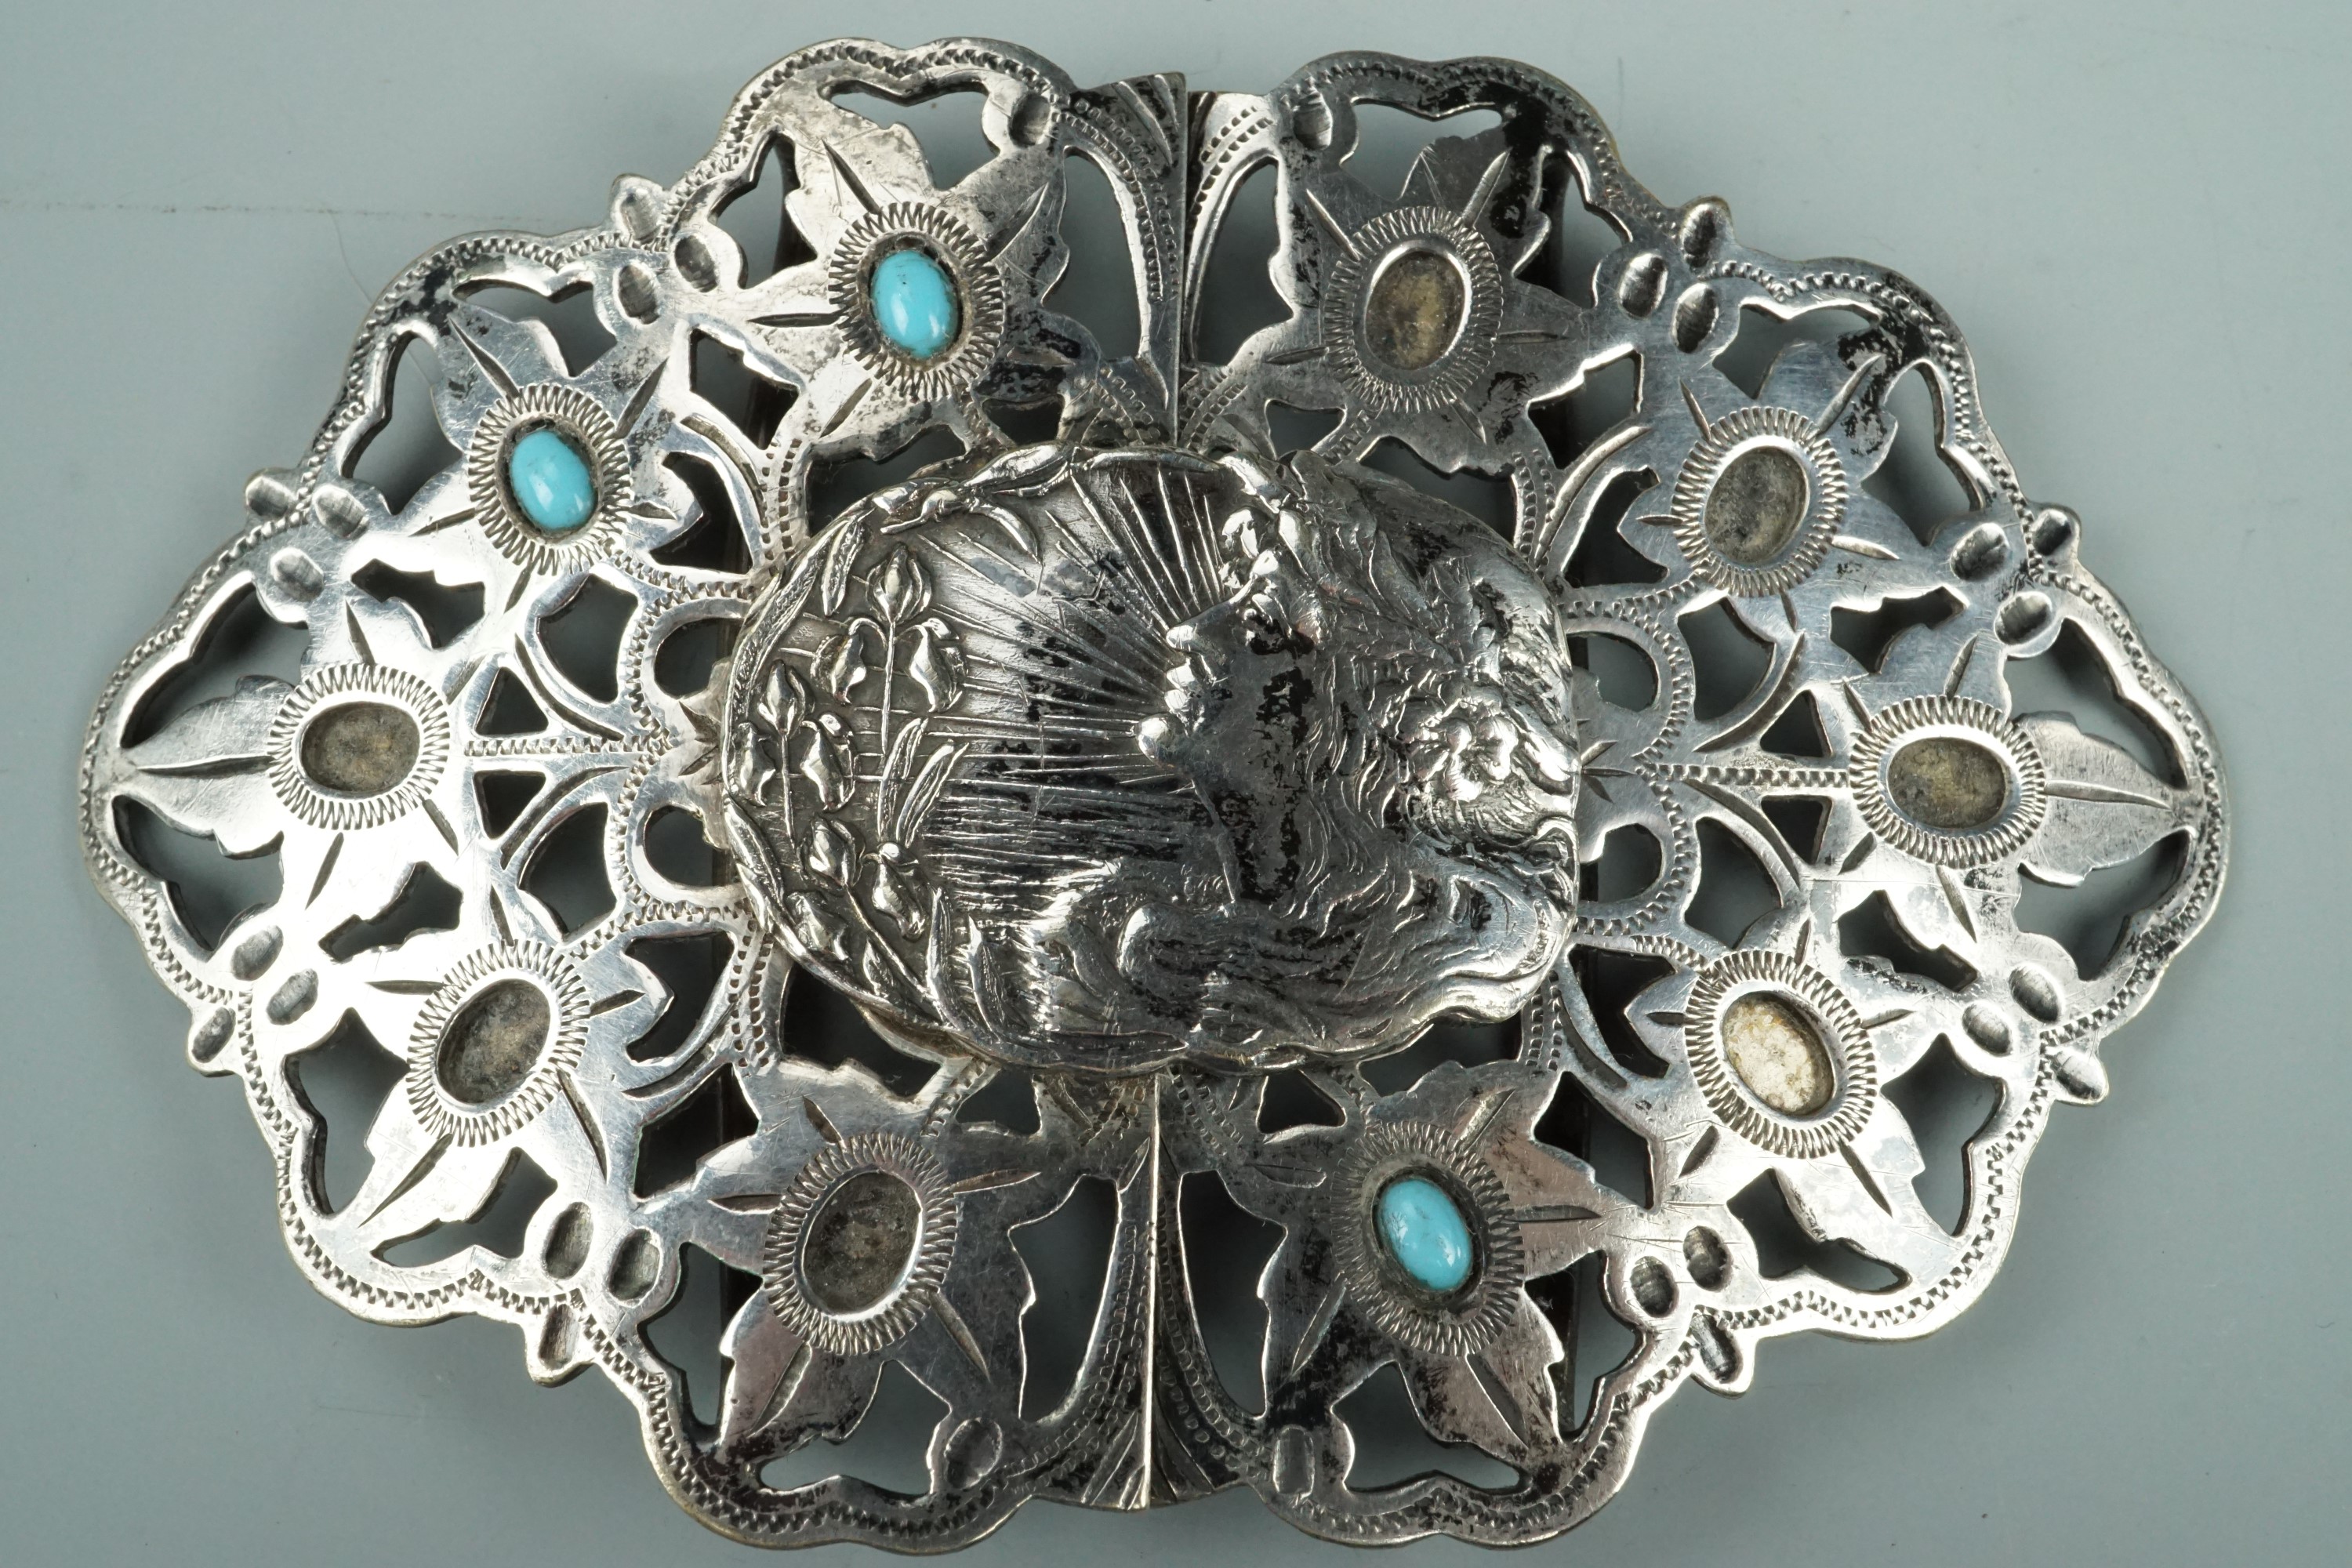 A Belle Epoque electroplate Art Nouveau belt buckle, 9 cm x 6 cm